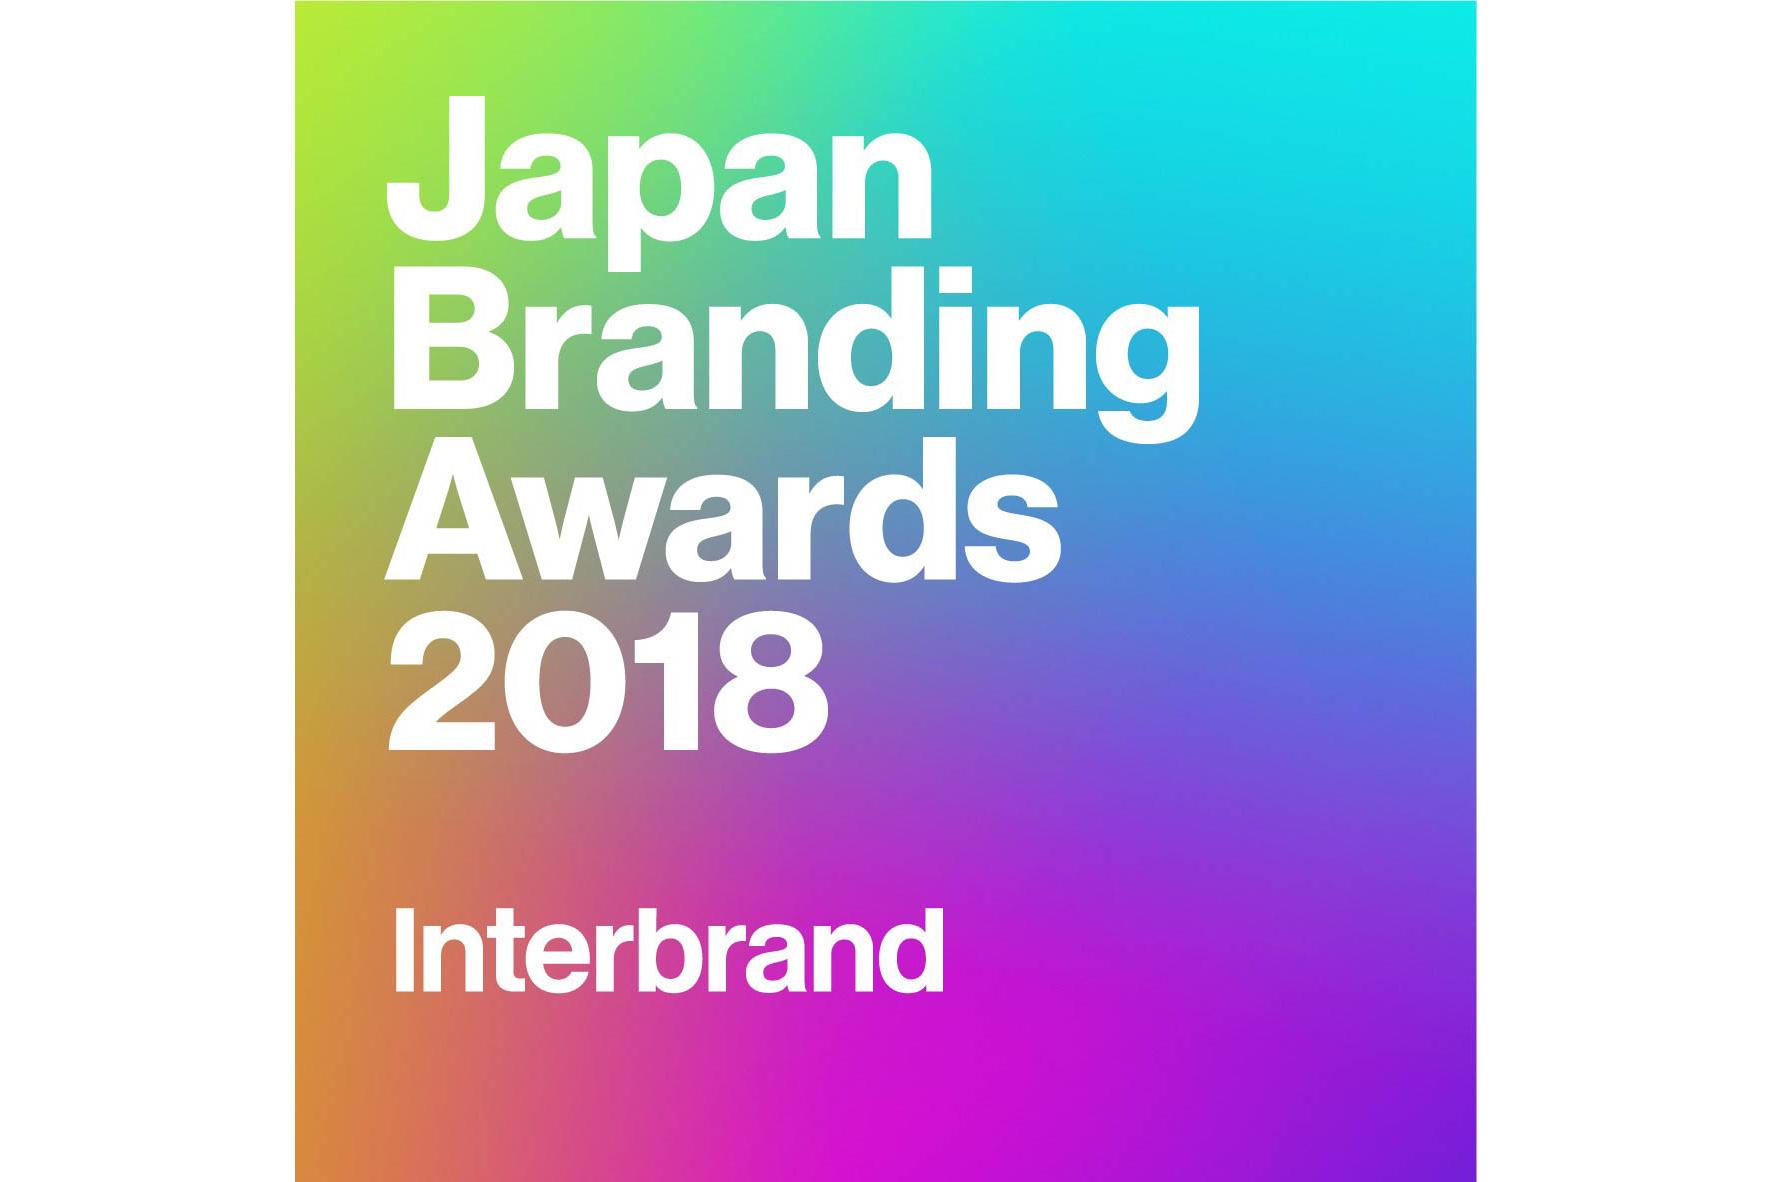 figure: The Japan Branding Awards 2018 logo